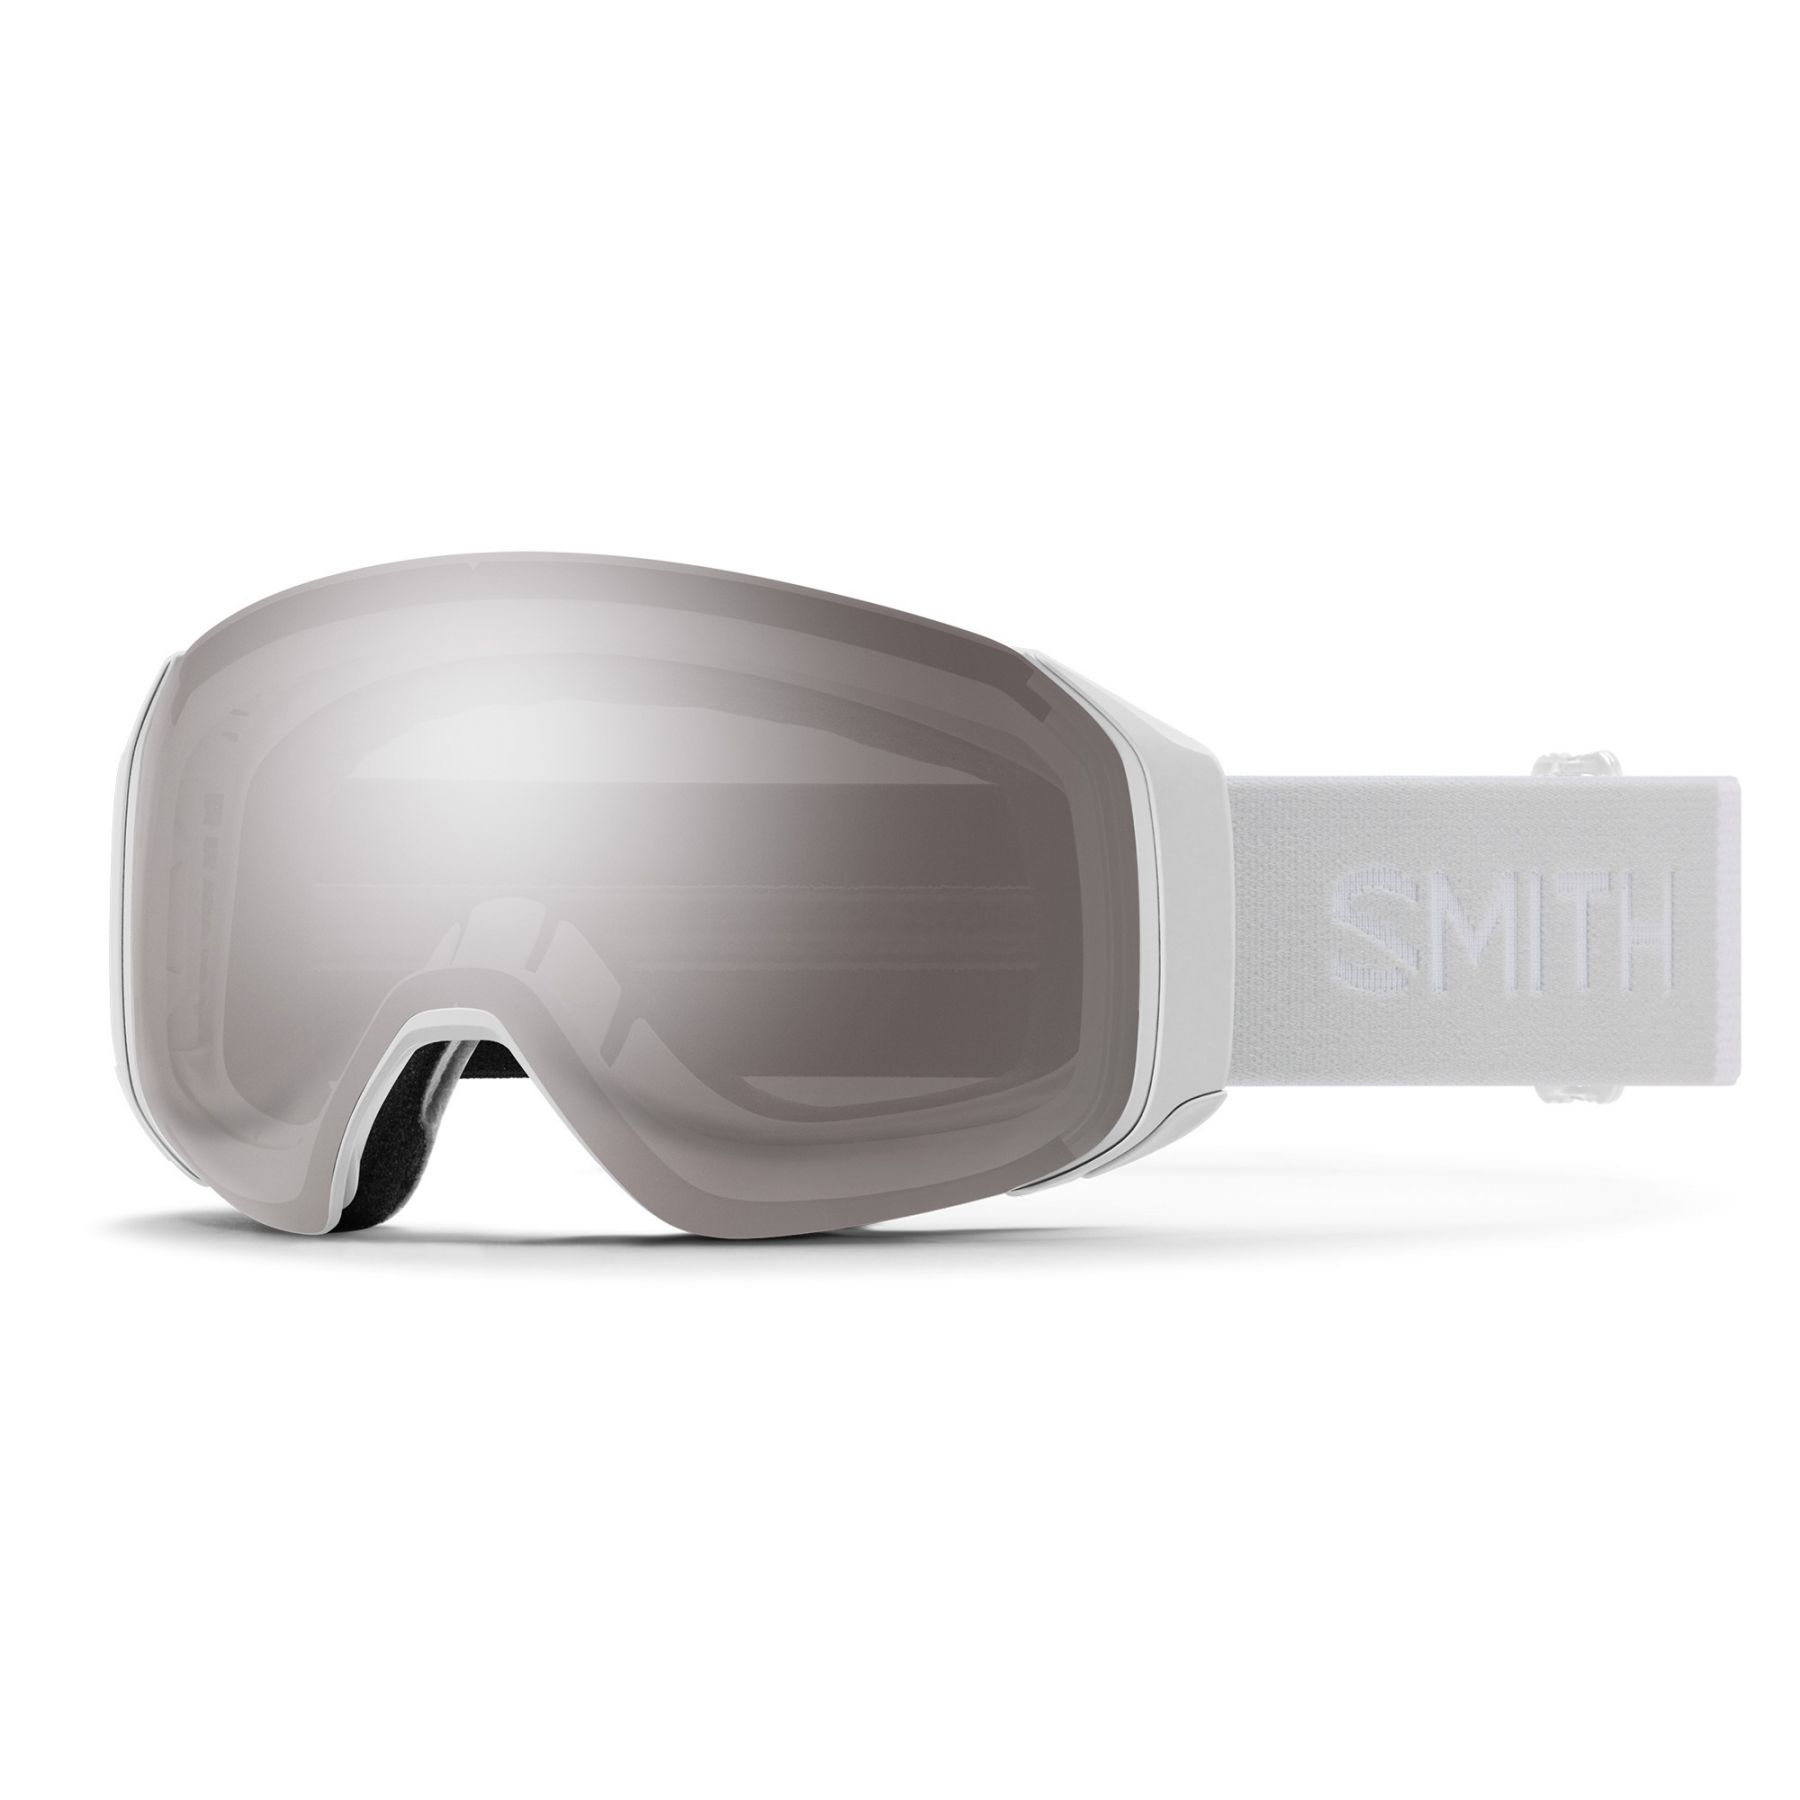 Se Smith 4D MAG S, skibrille, hvid hos Skisport.dk